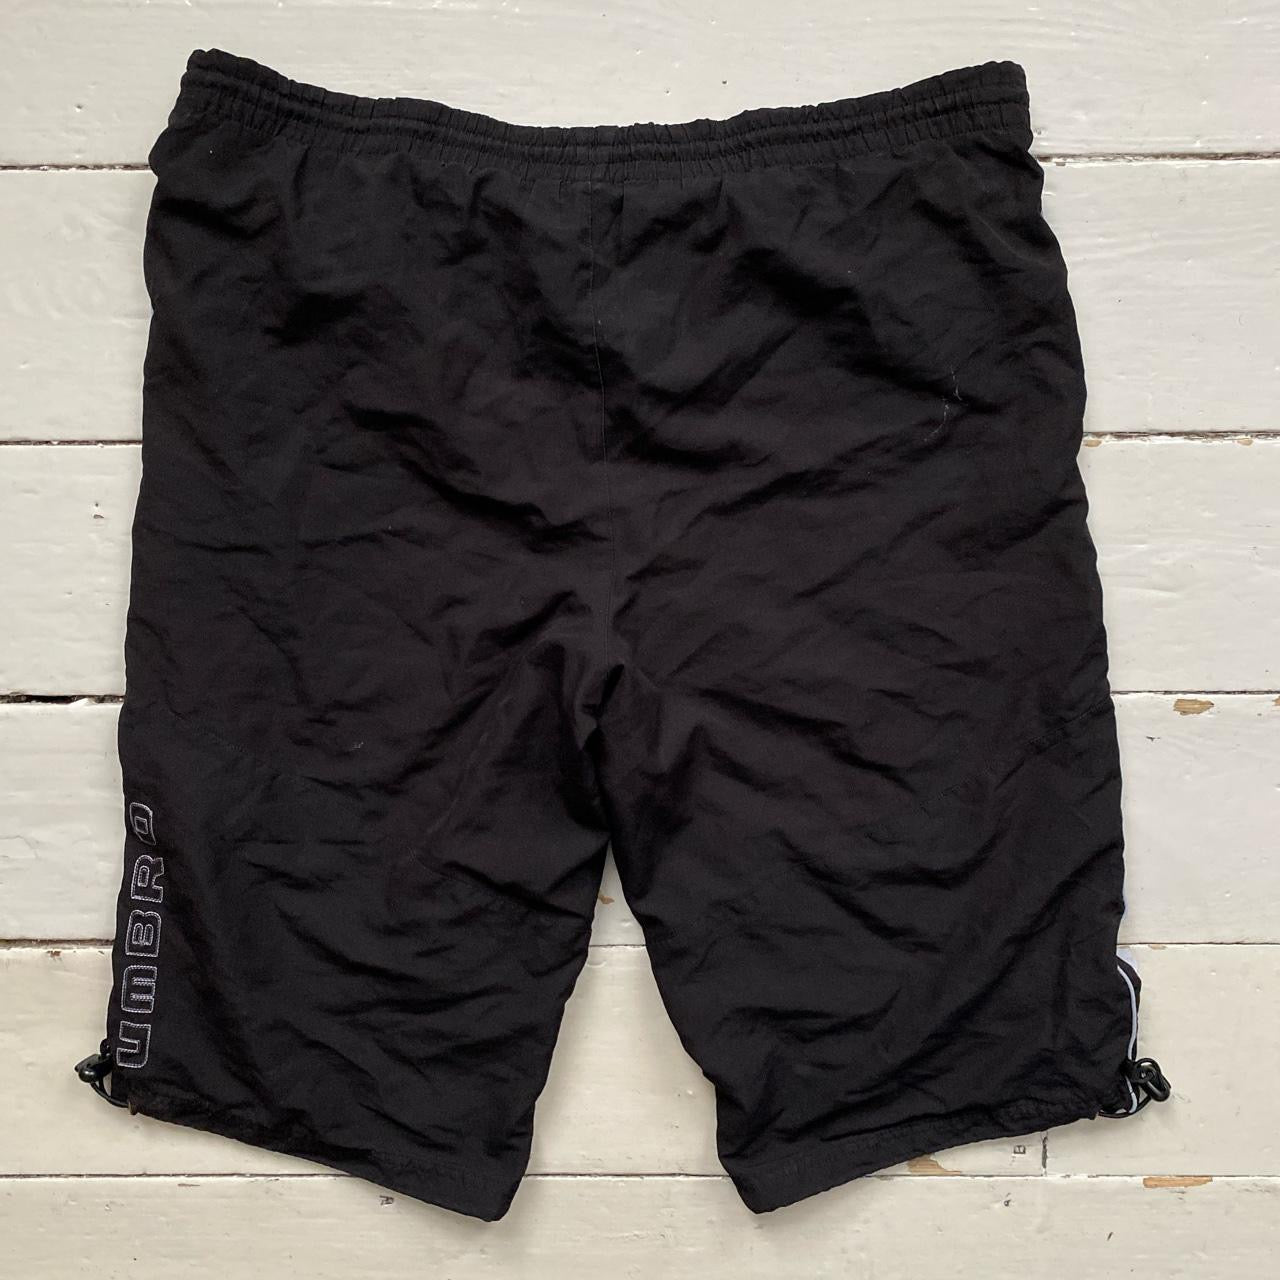 Umbro Black Spellout Shell Shorts (Medium)